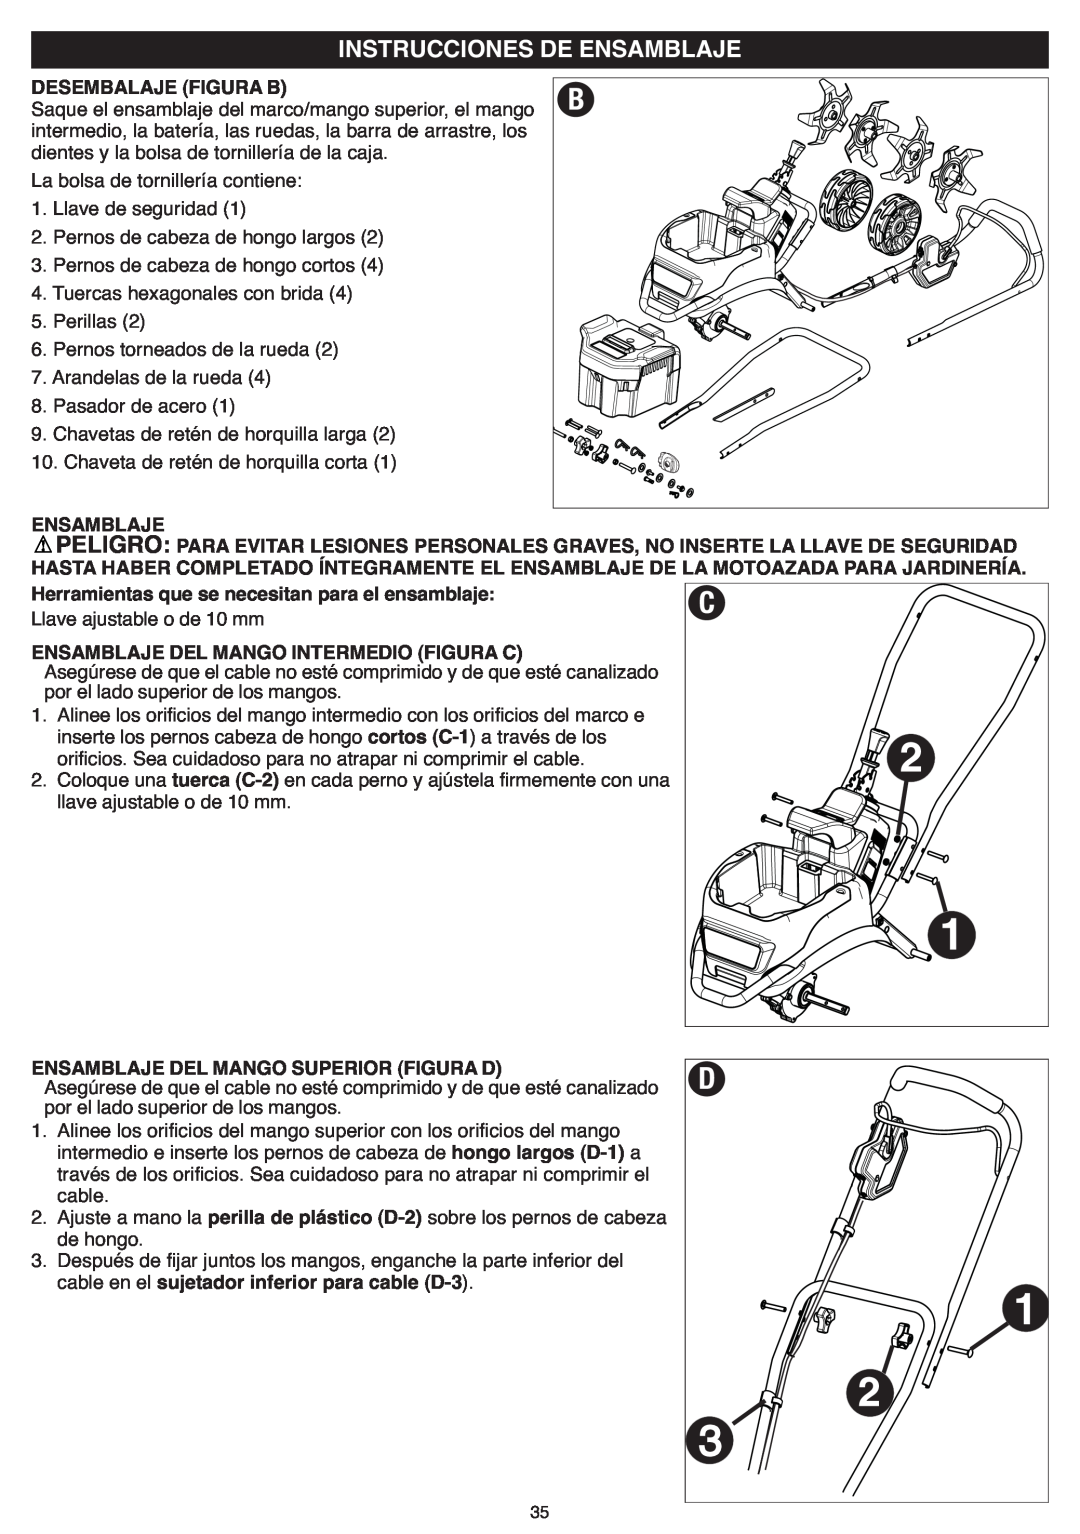 Black & Decker CTL36 instruction manual Desembalaje Figura B, Ensamblaje, Herramientas que se necesitan para el ensamblaje 